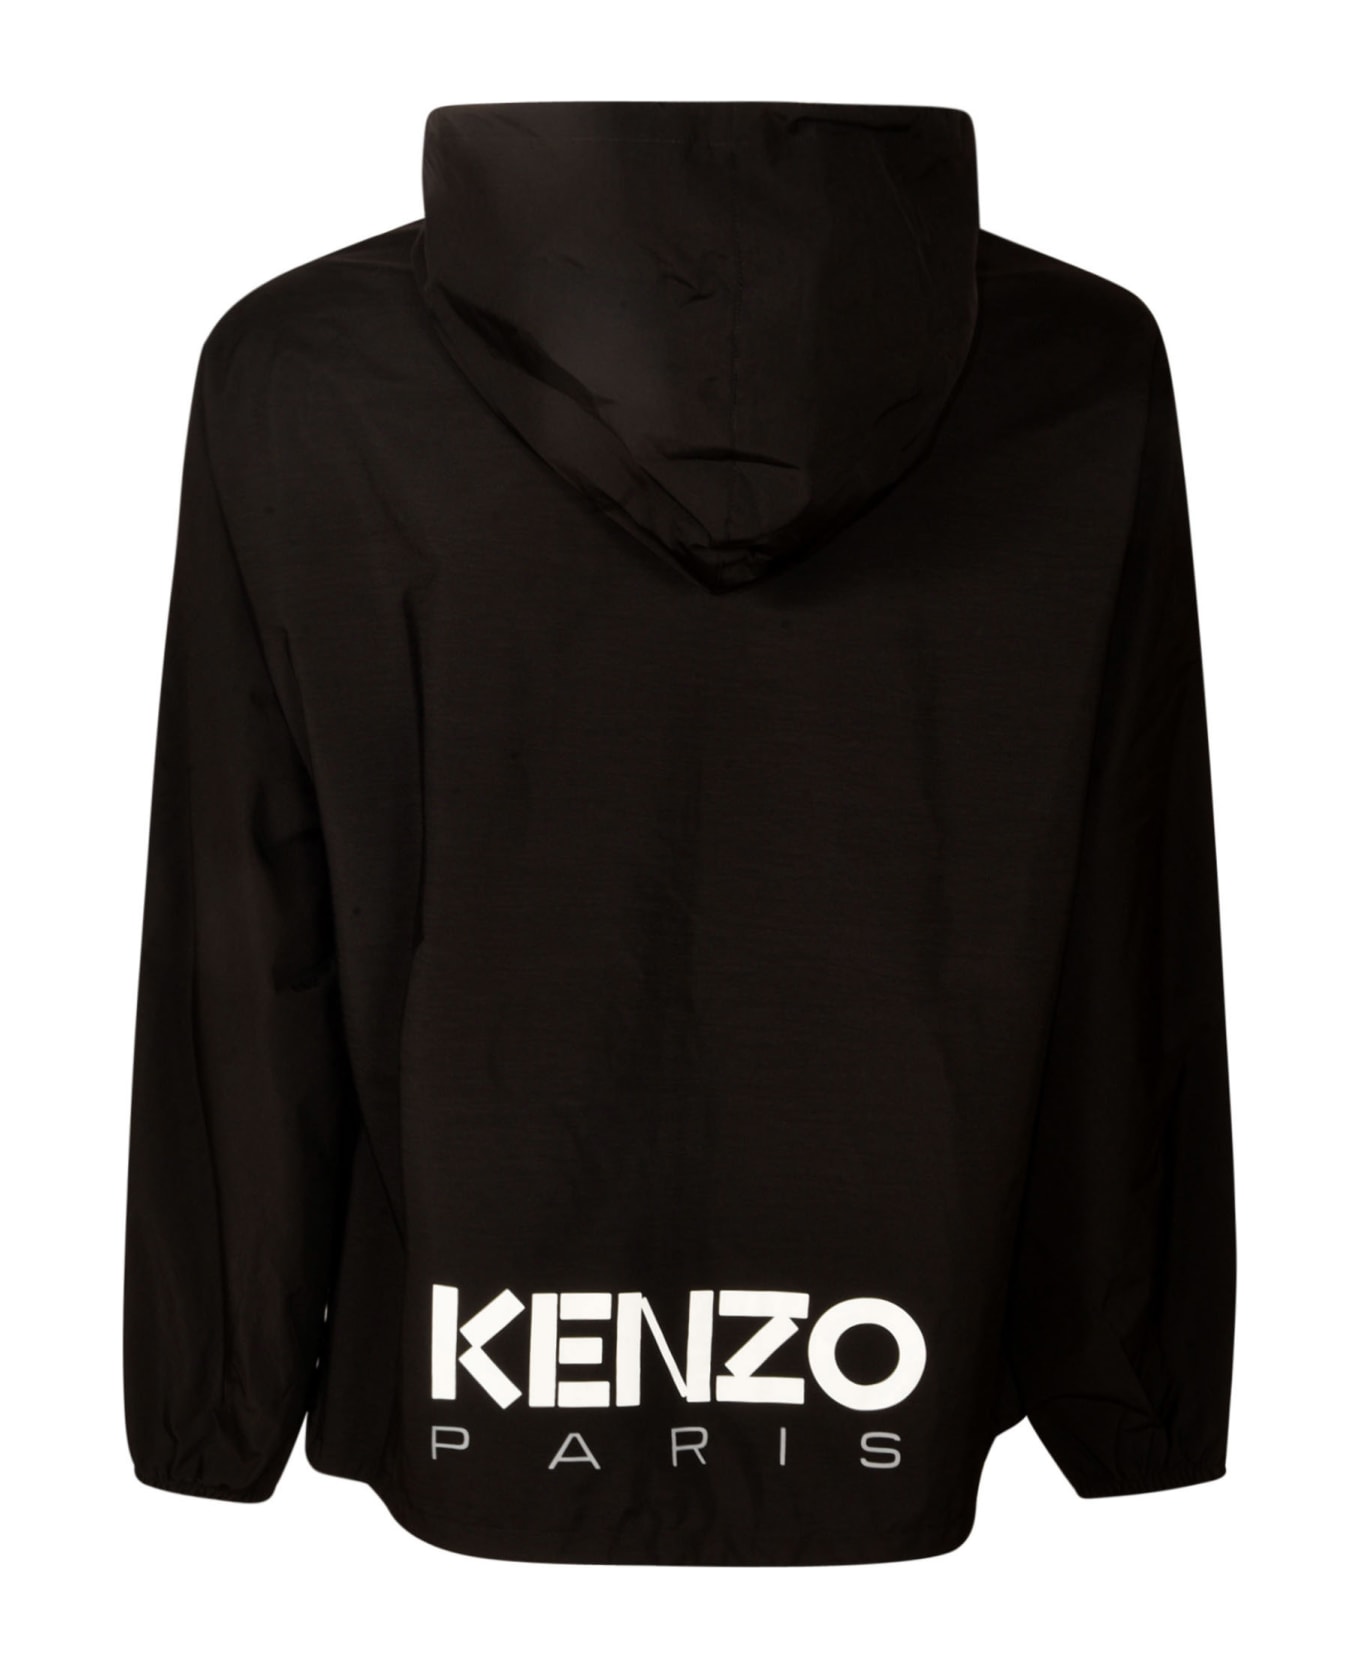 Kenzo Bicolor Windbreaker - Black レインコート